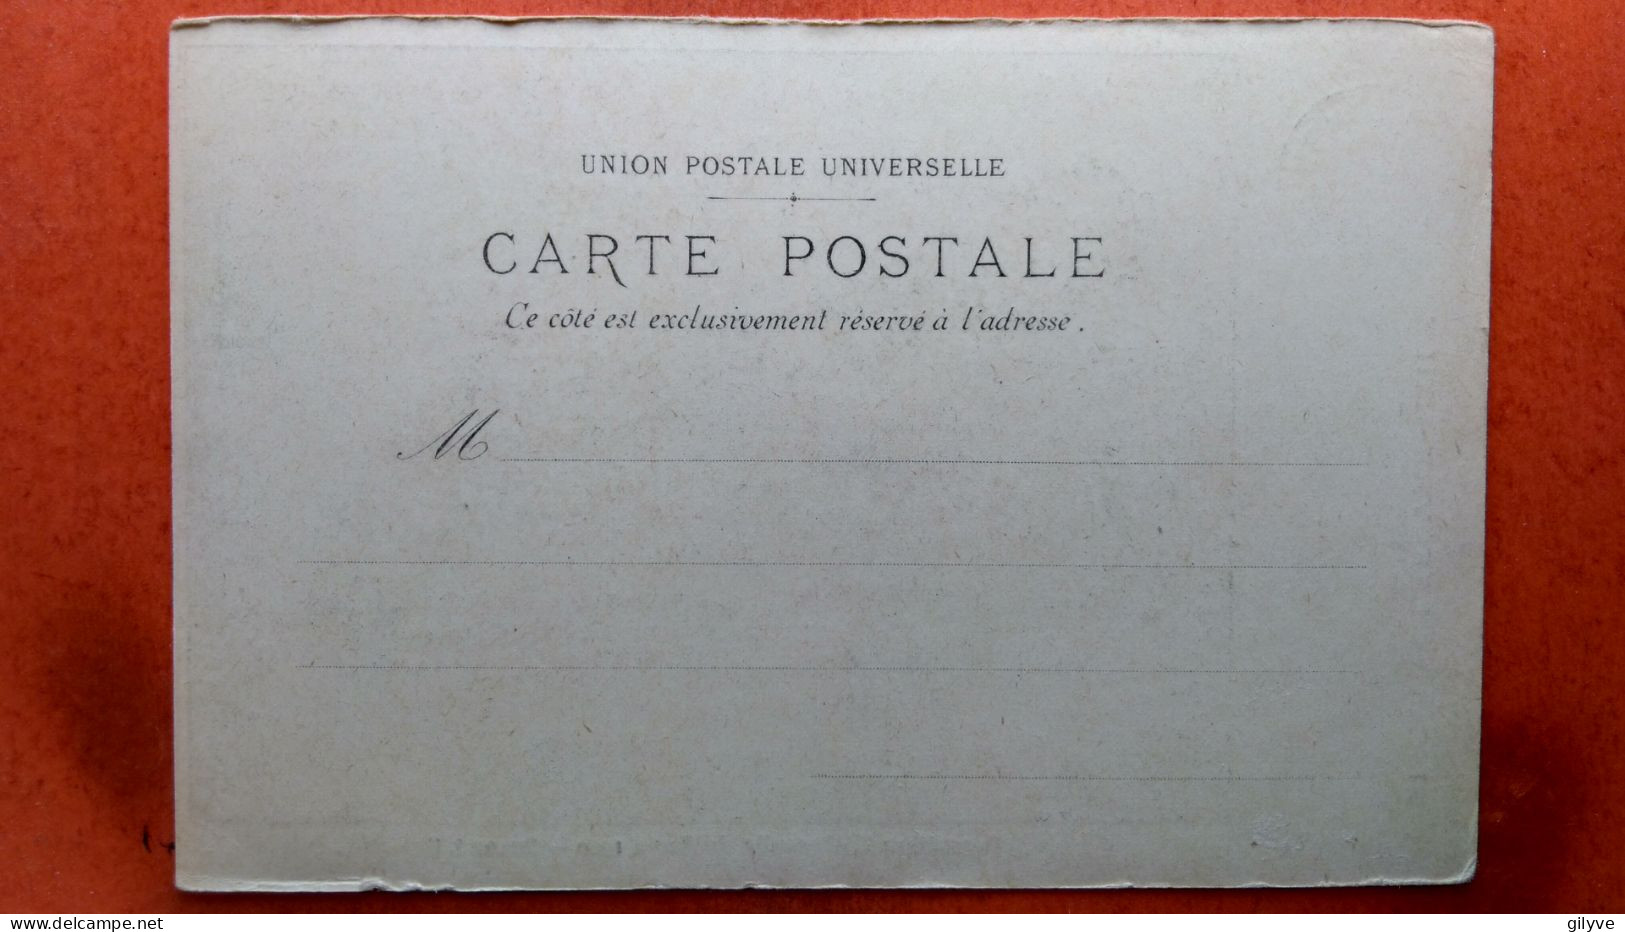 CPA (75) Exposition Universelle De Paris.1900. Phare LU. Publicité  (7A.524) - Expositions